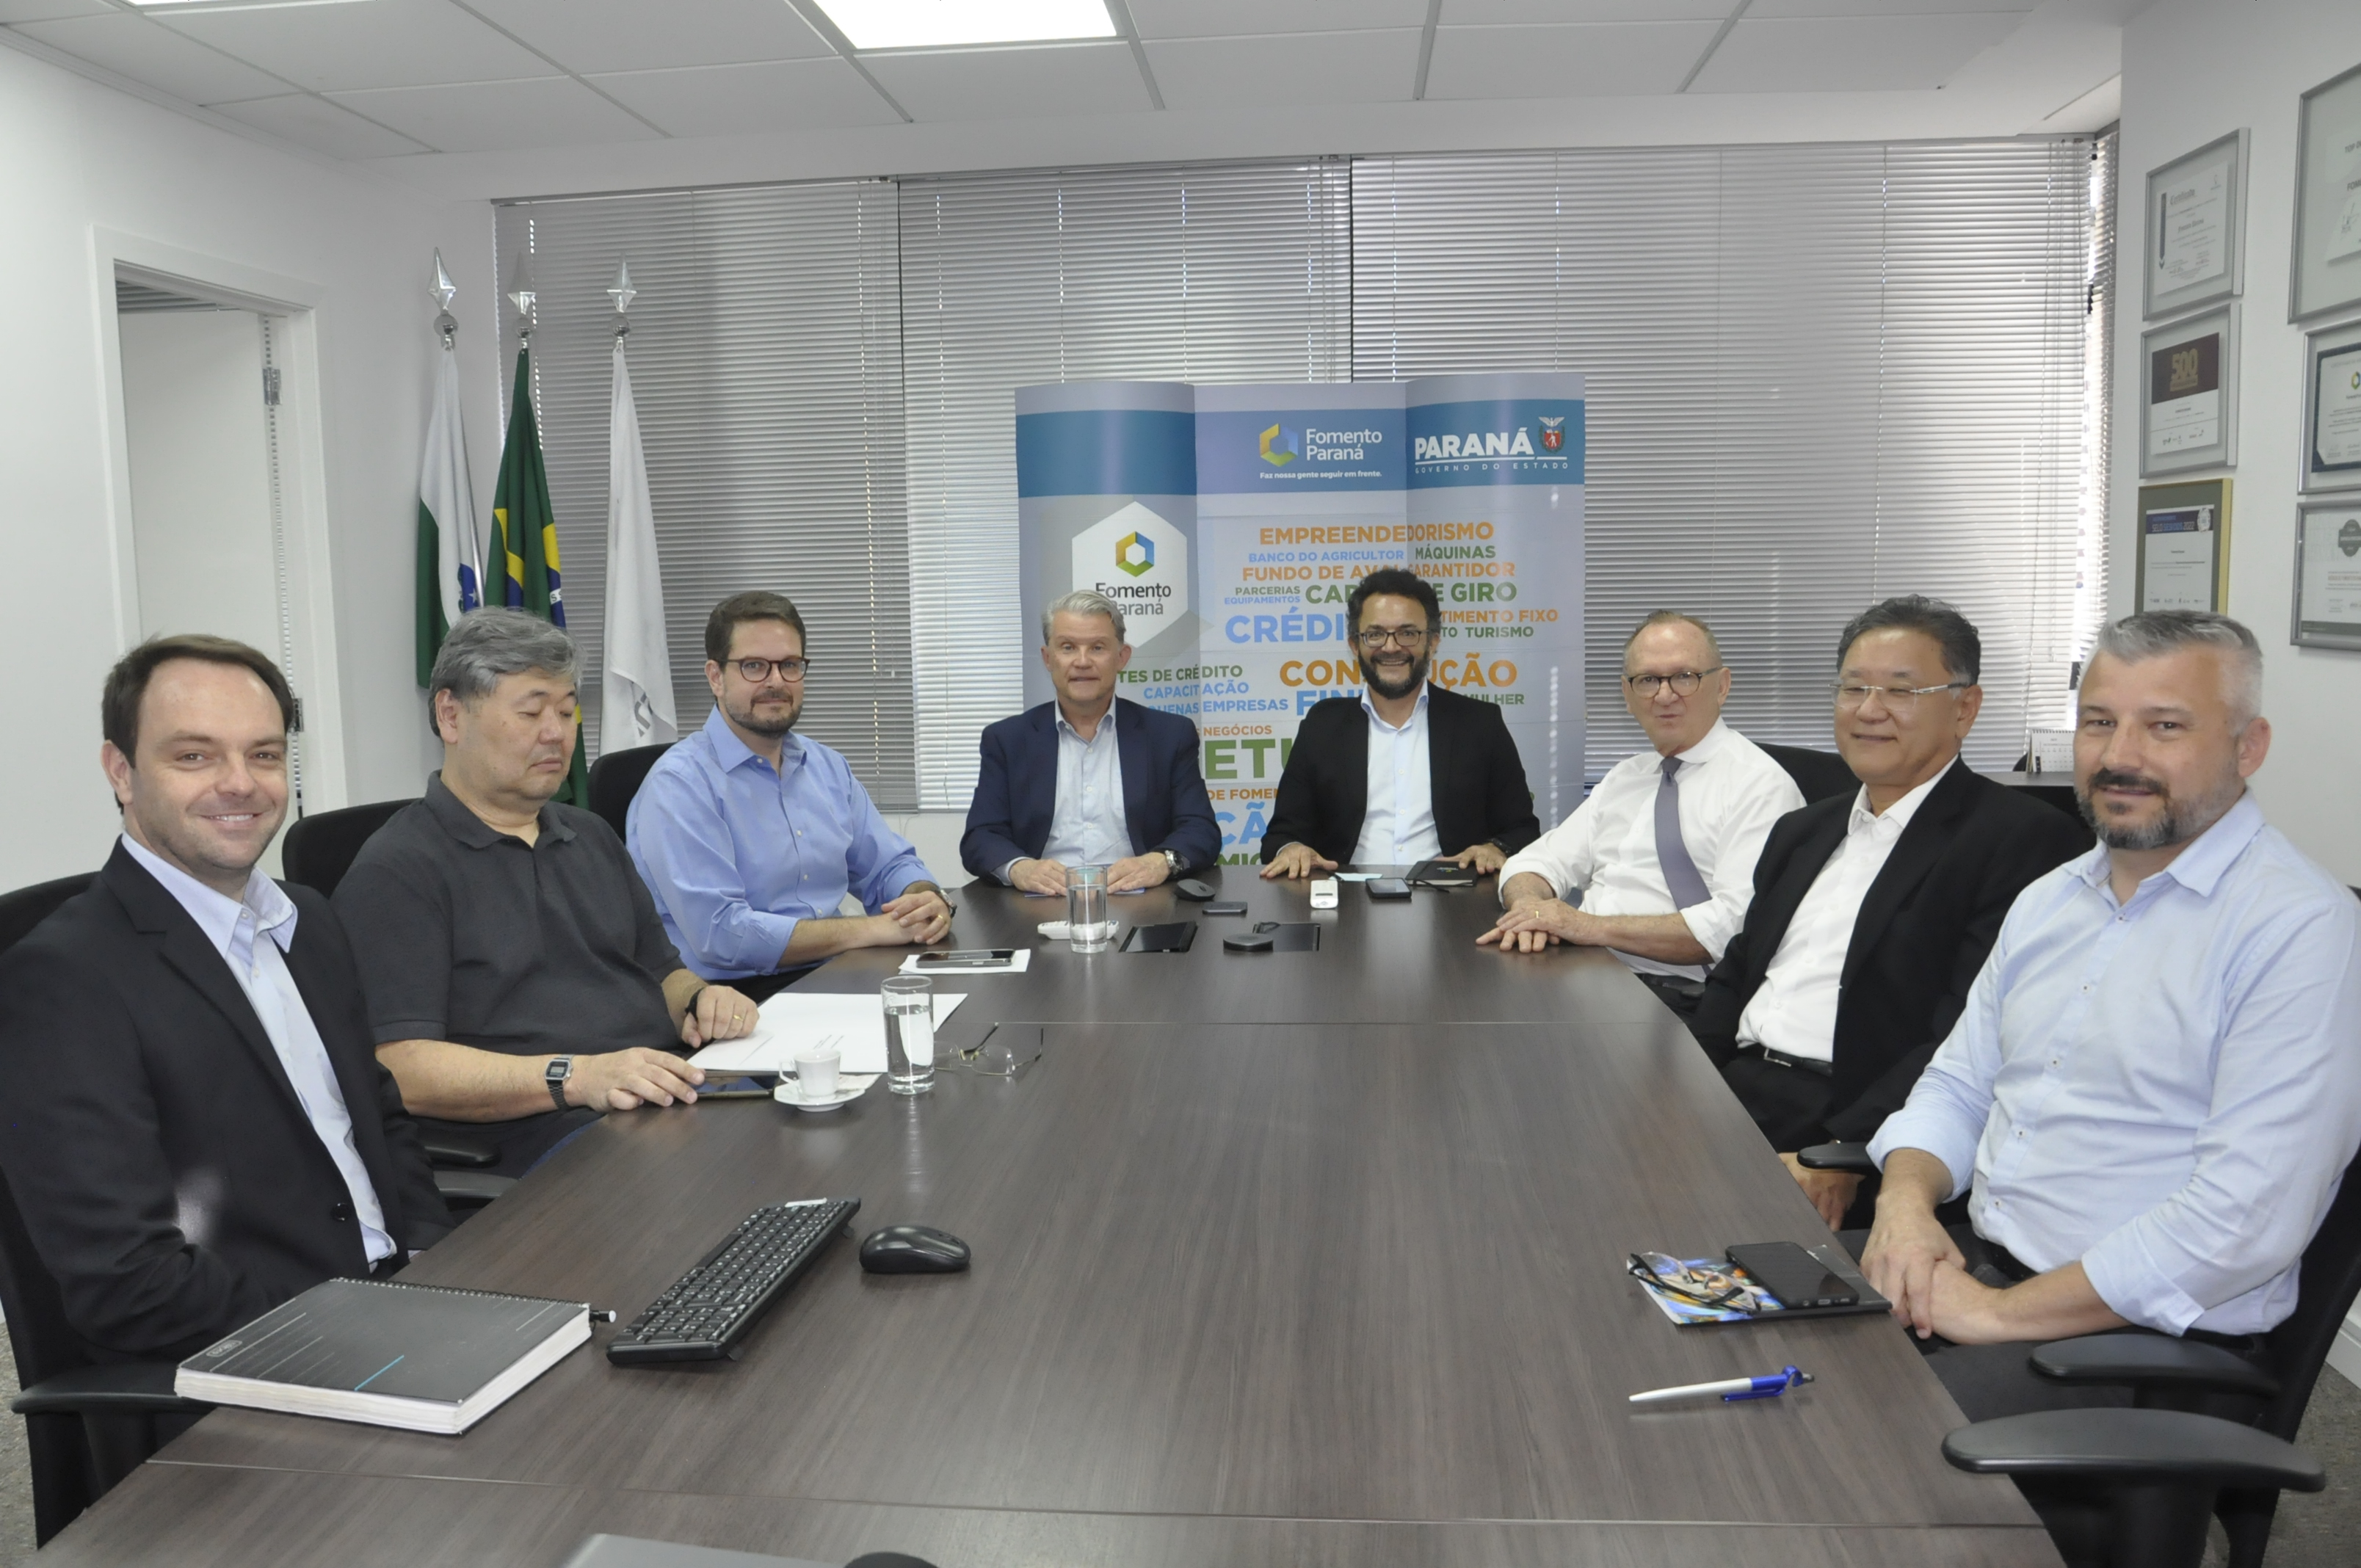 Ipardes entrega Fomento Paraná estudo que mediu impacto do crédito na economia paranaense